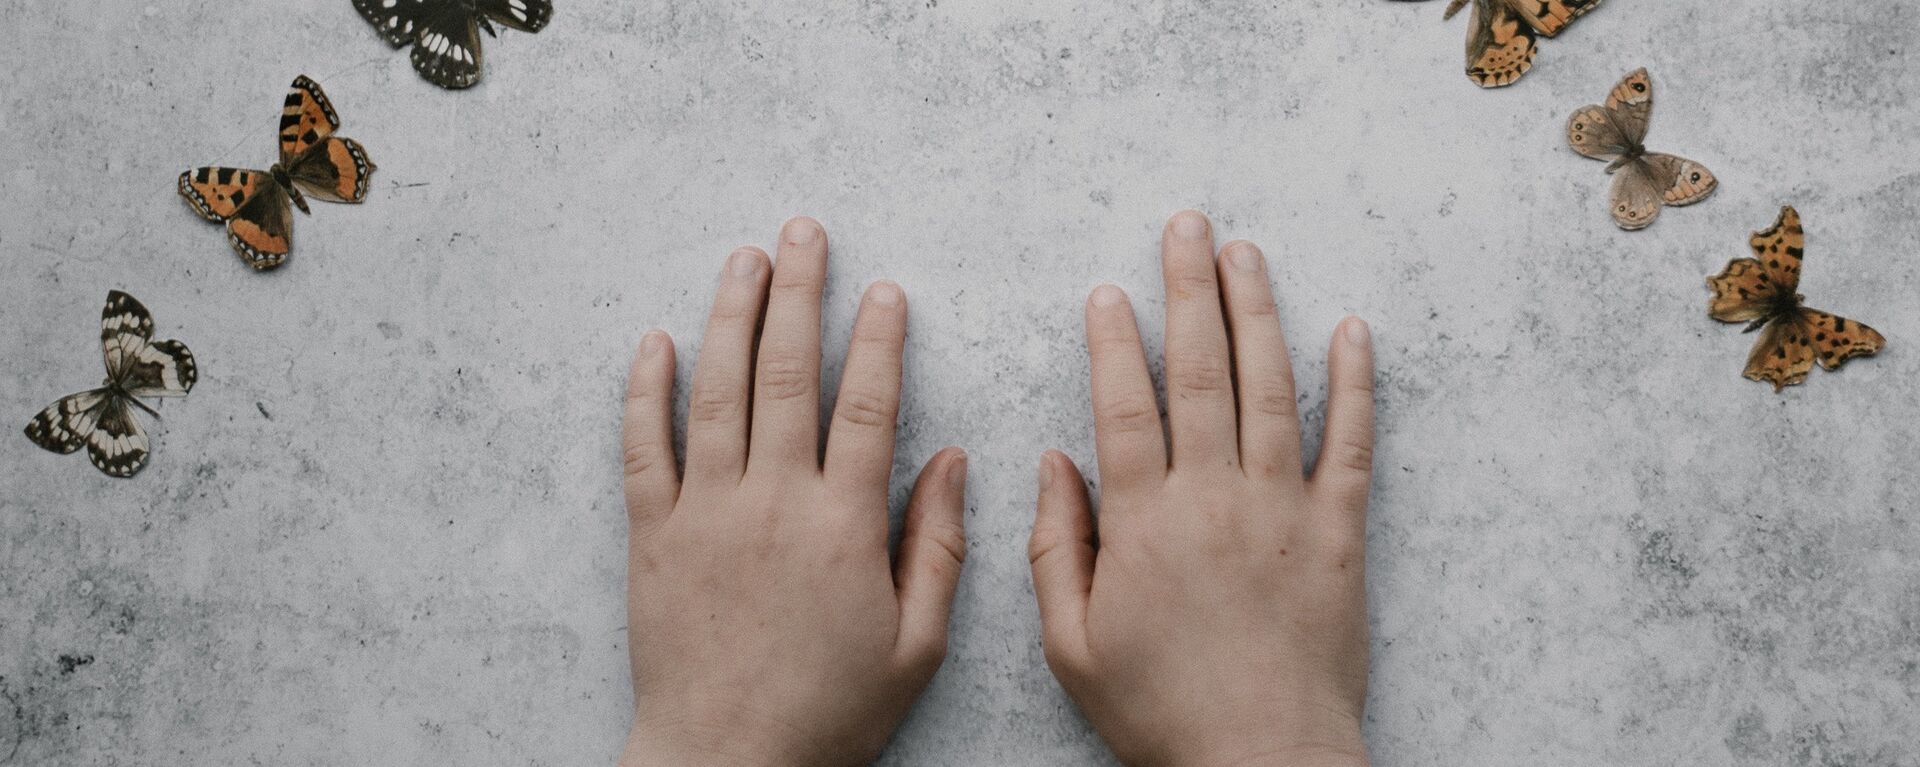 Las manos de un niño (imagen referencial) - Sputnik Mundo, 1920, 20.05.2021